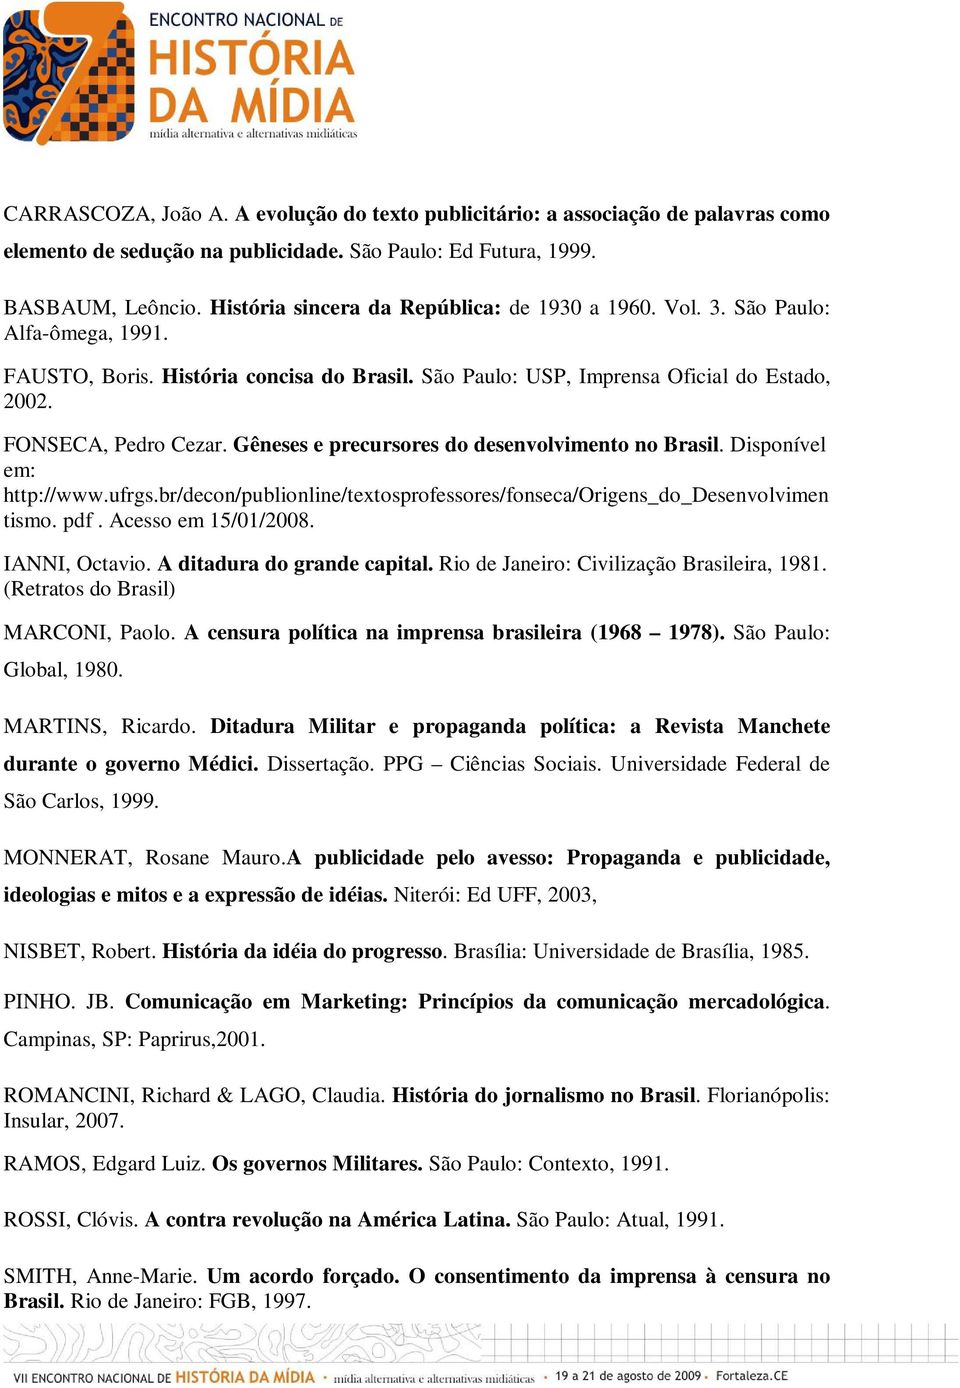 Gêneses e precursores do desenvolvimento no Brasil. Disponível em: http://www.ufrgs.br/decon/publionline/textosprofessores/fonseca/origens_do_desenvolvimen tismo. pdf. Acesso em 15/01/2008.